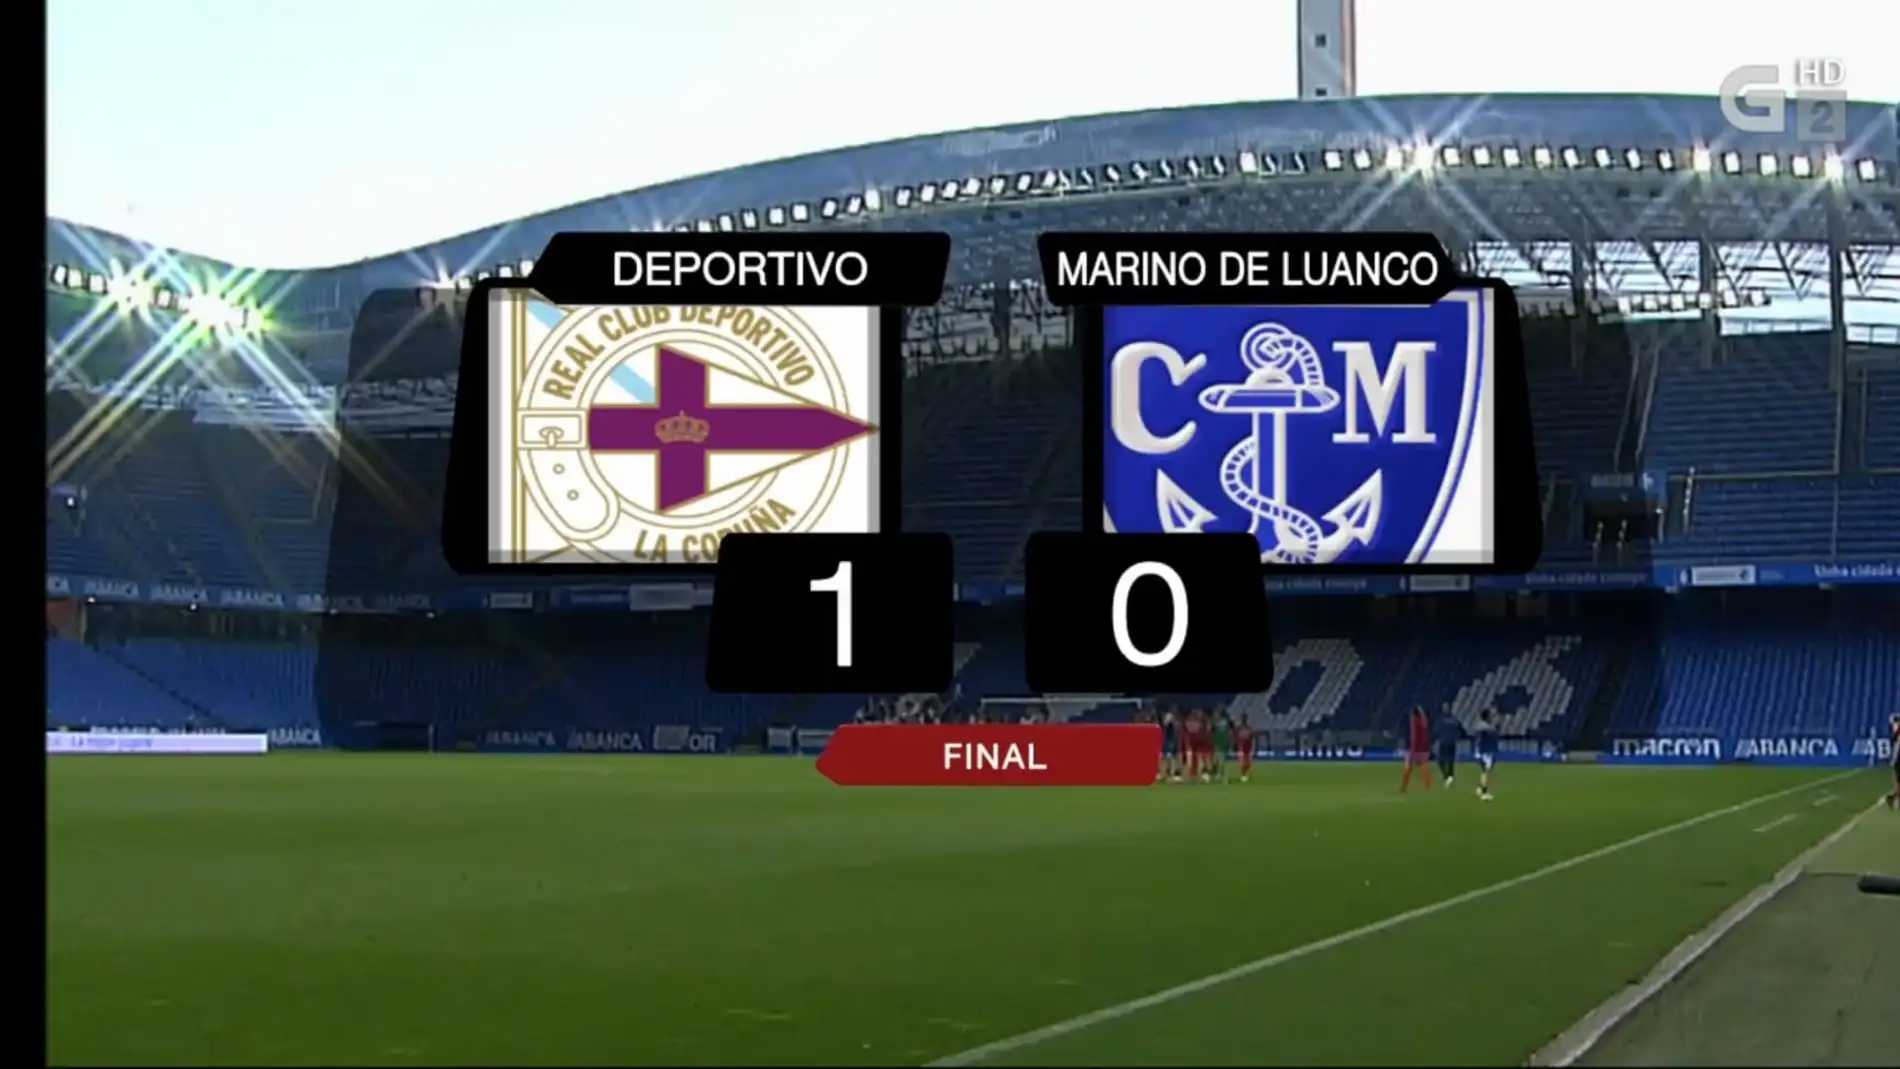 Deportivo 1-Marino de Luanco 0